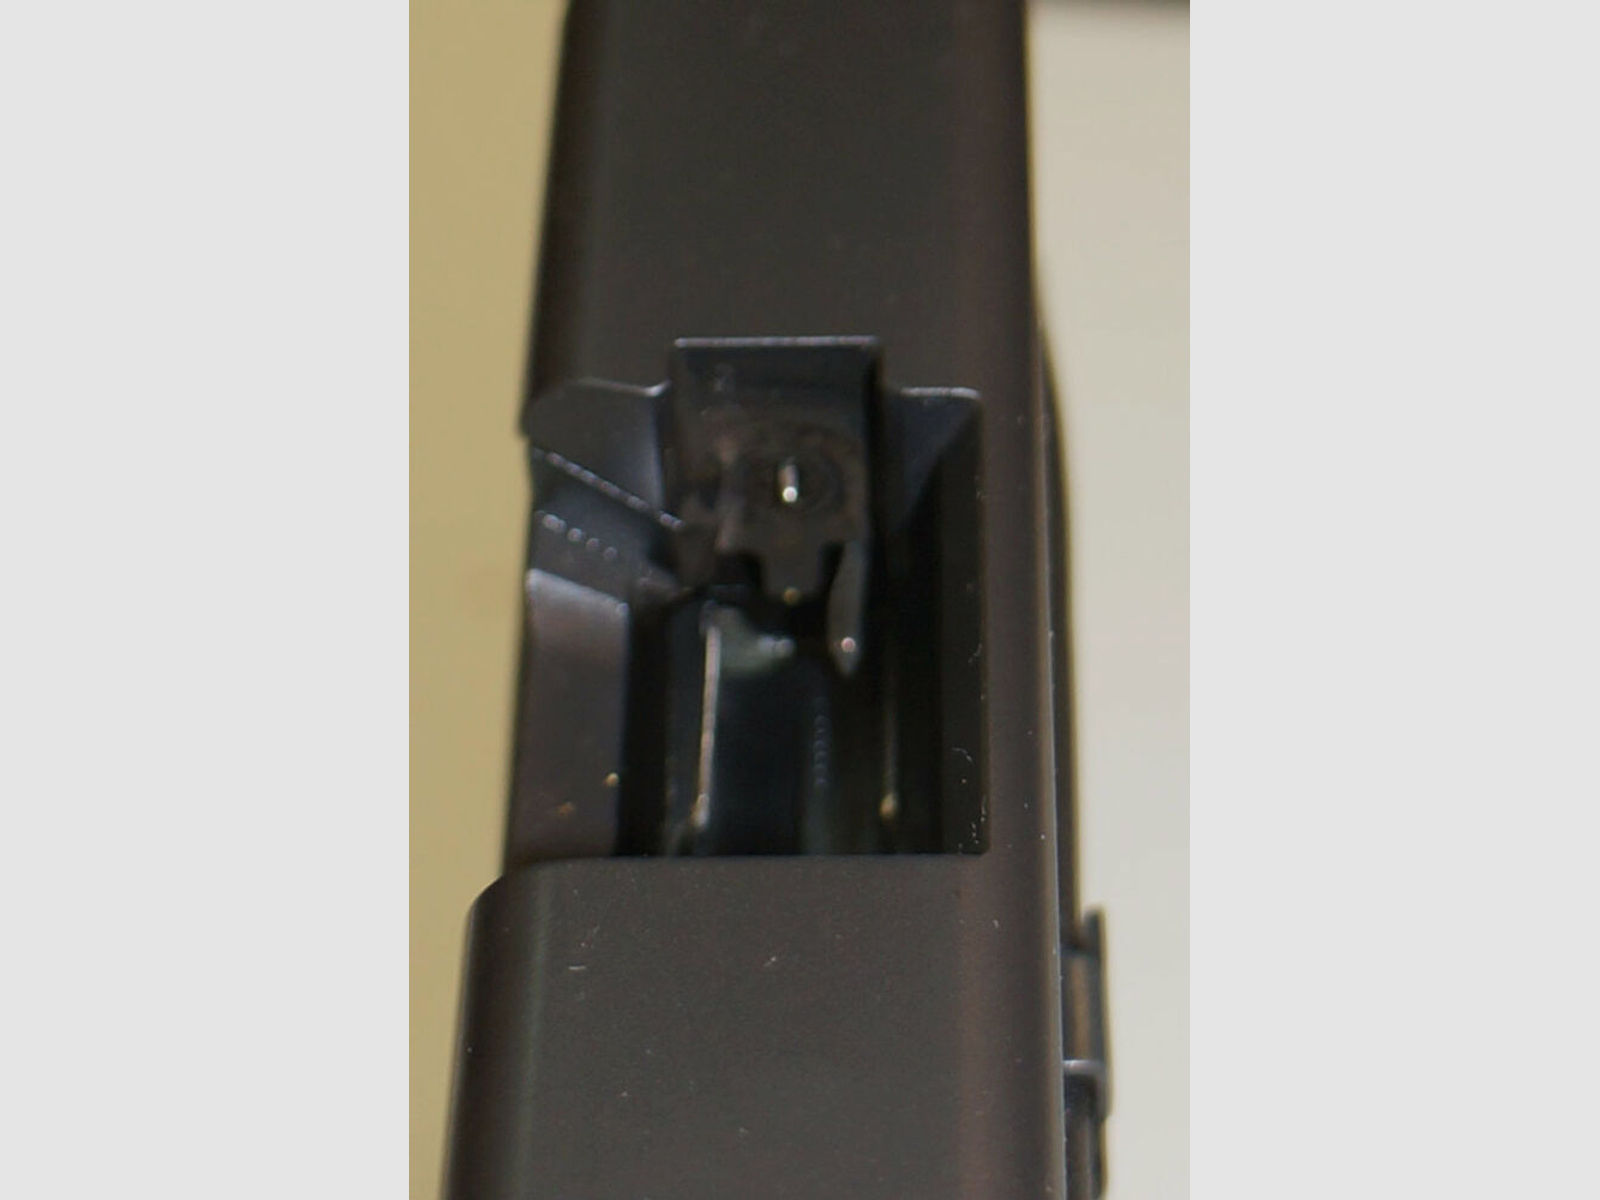 Glock	 Pistole Glock 17 Gen4 im Kaliber 9mm Para ( 9x19 ) Inkl. Zubehör